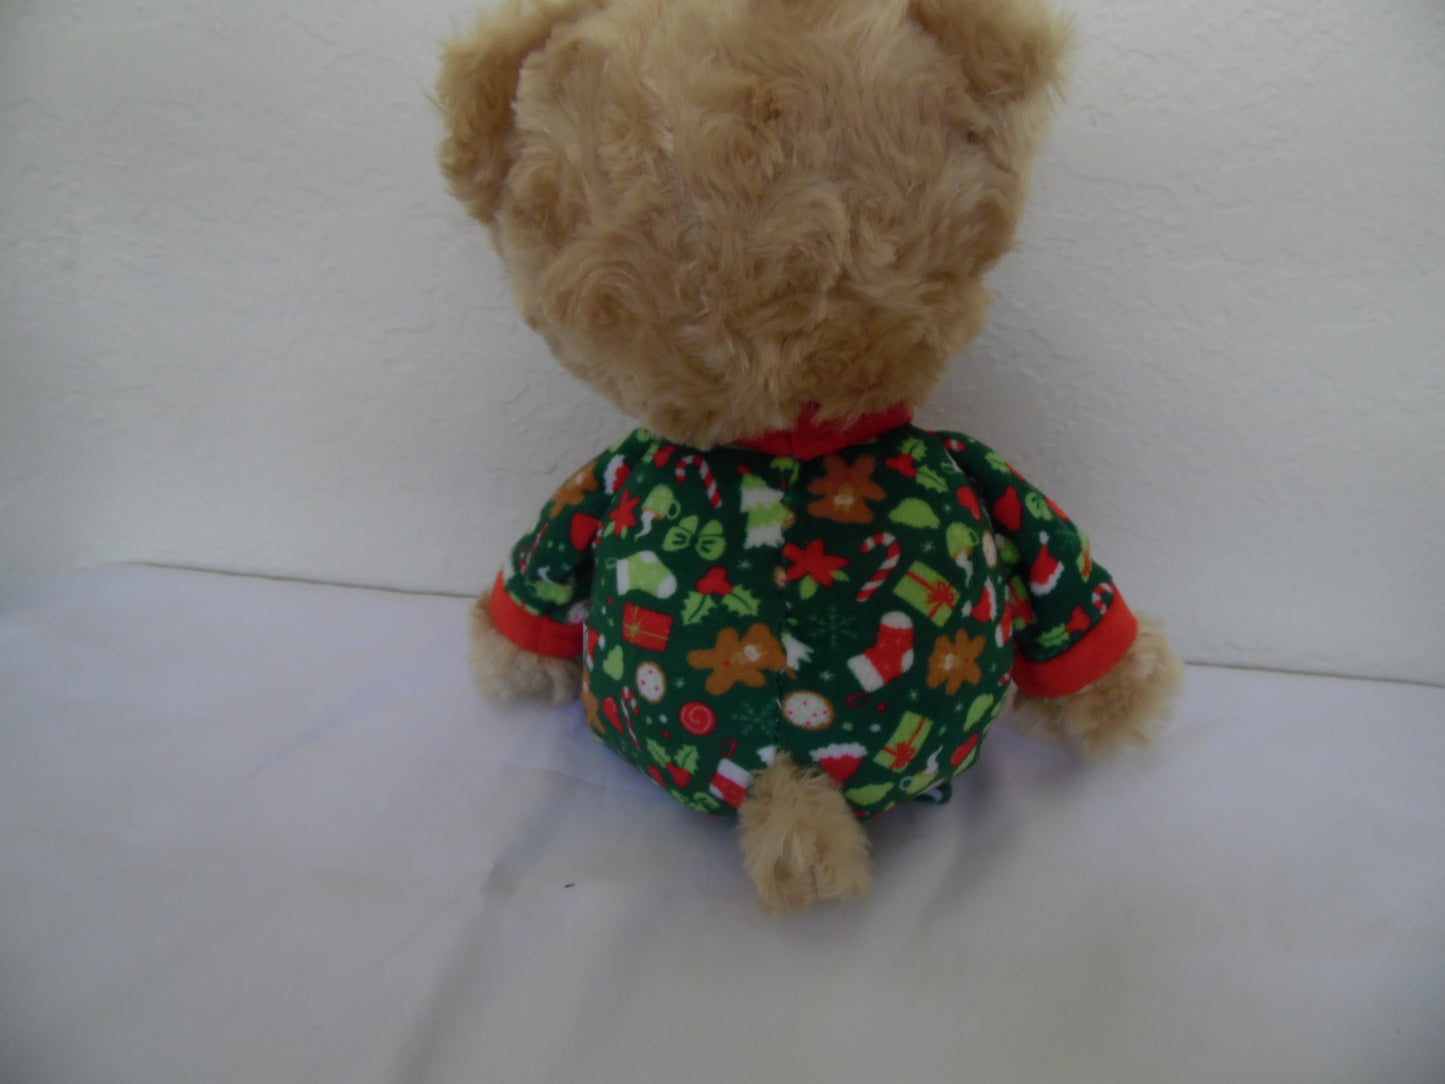 BAB Squeaky Teddy Bear Plush Dog Toy